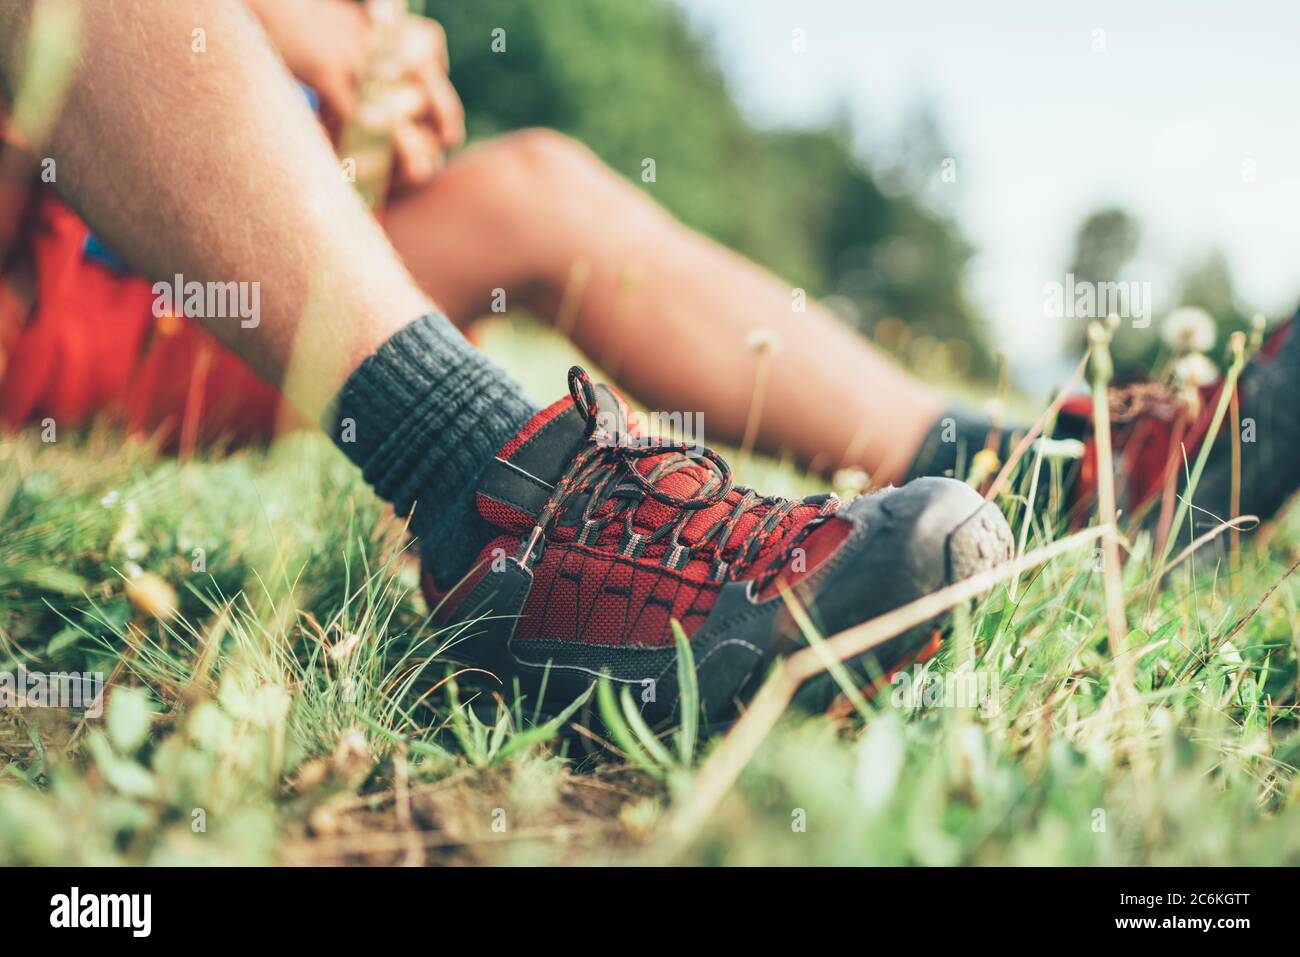 Chaussures de randonnée Backpacker gros plan. L'homme a une pause de repos  assis sur l'herbe verte et appréciant la randonnée de montagne, sport actif  Backpacking santé Photo Stock - Alamy